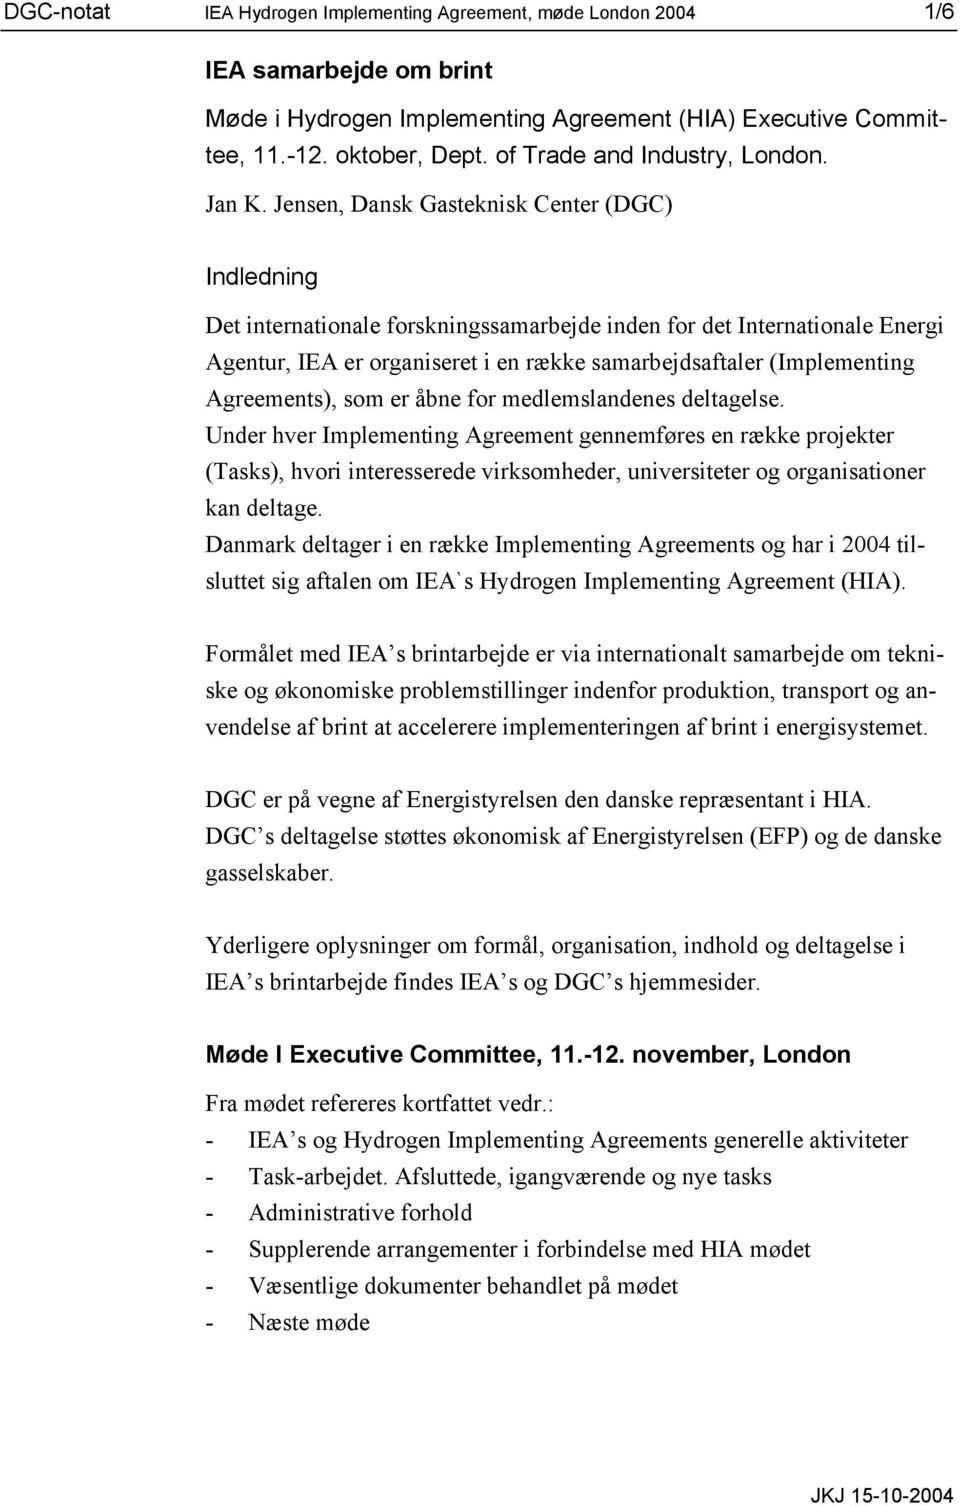 Jensen, Dansk Gasteknisk Center (DGC) Indledning Det internationale forskningssamarbejde inden for det Internationale Energi Agentur, IEA er organiseret i en række samarbejdsaftaler (Implementing